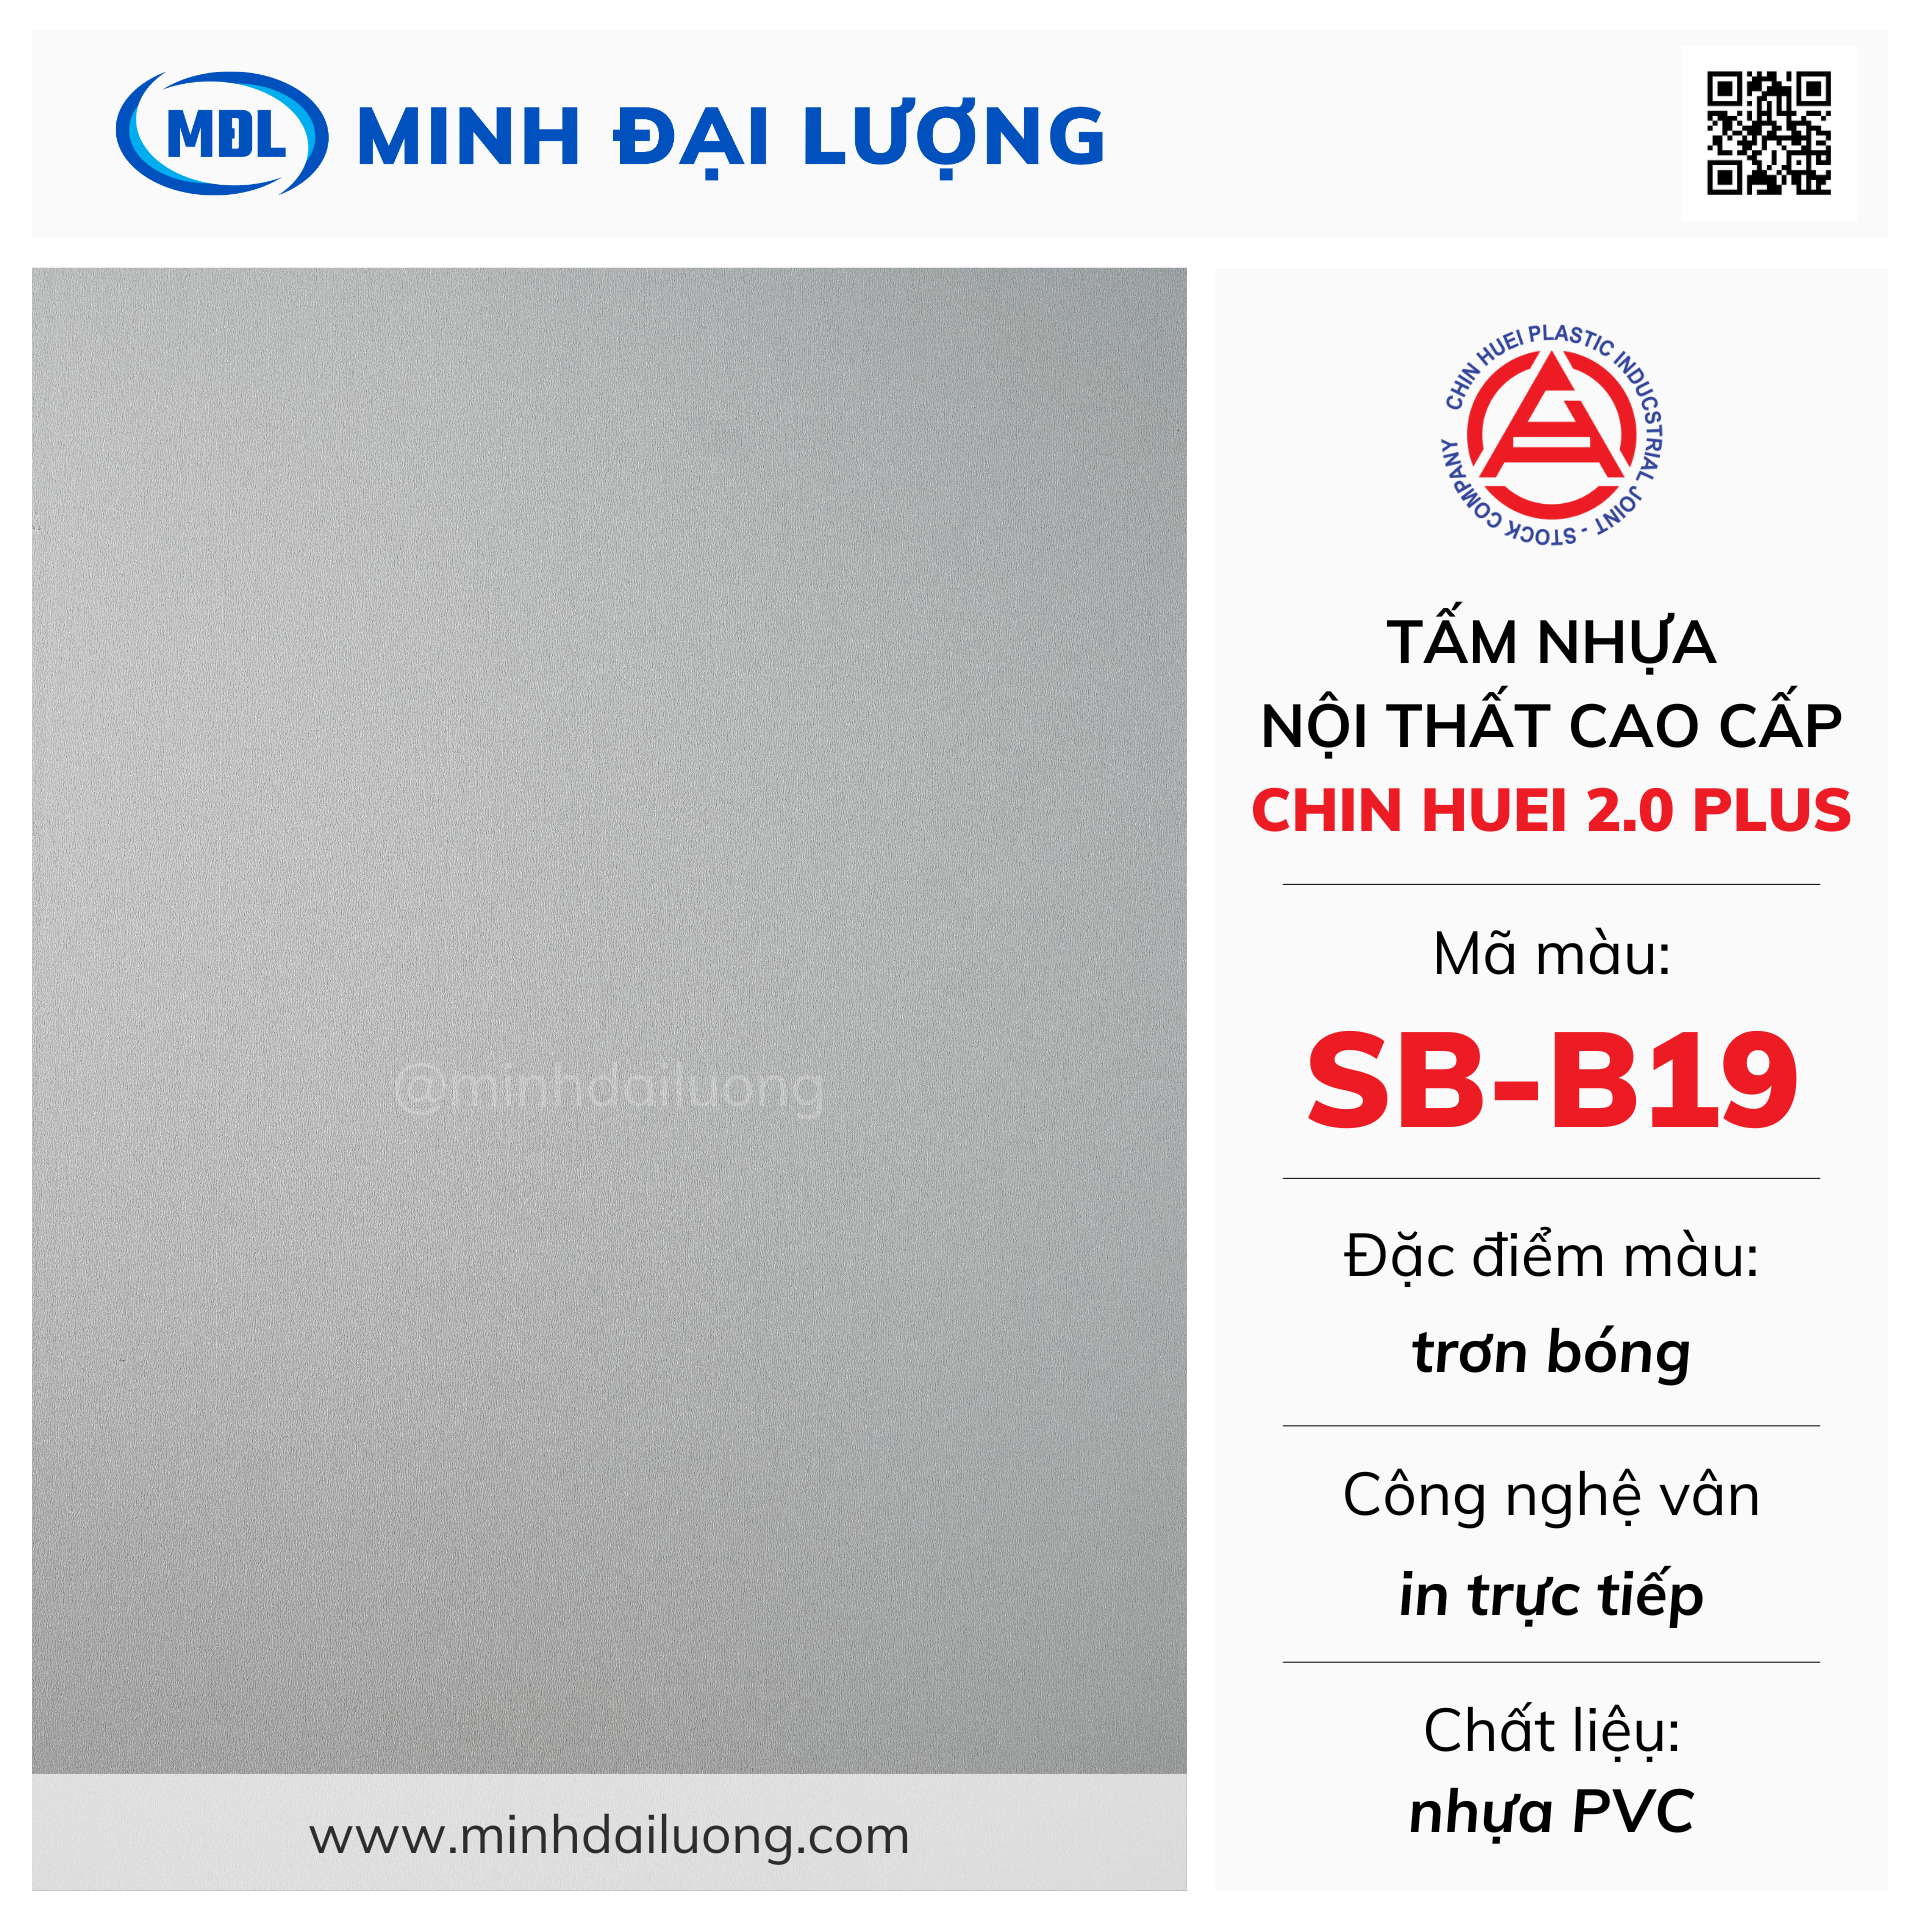 Tấm nhựa nội thất cao cấp Chin Huei 2.0 Plus màu SB-B19